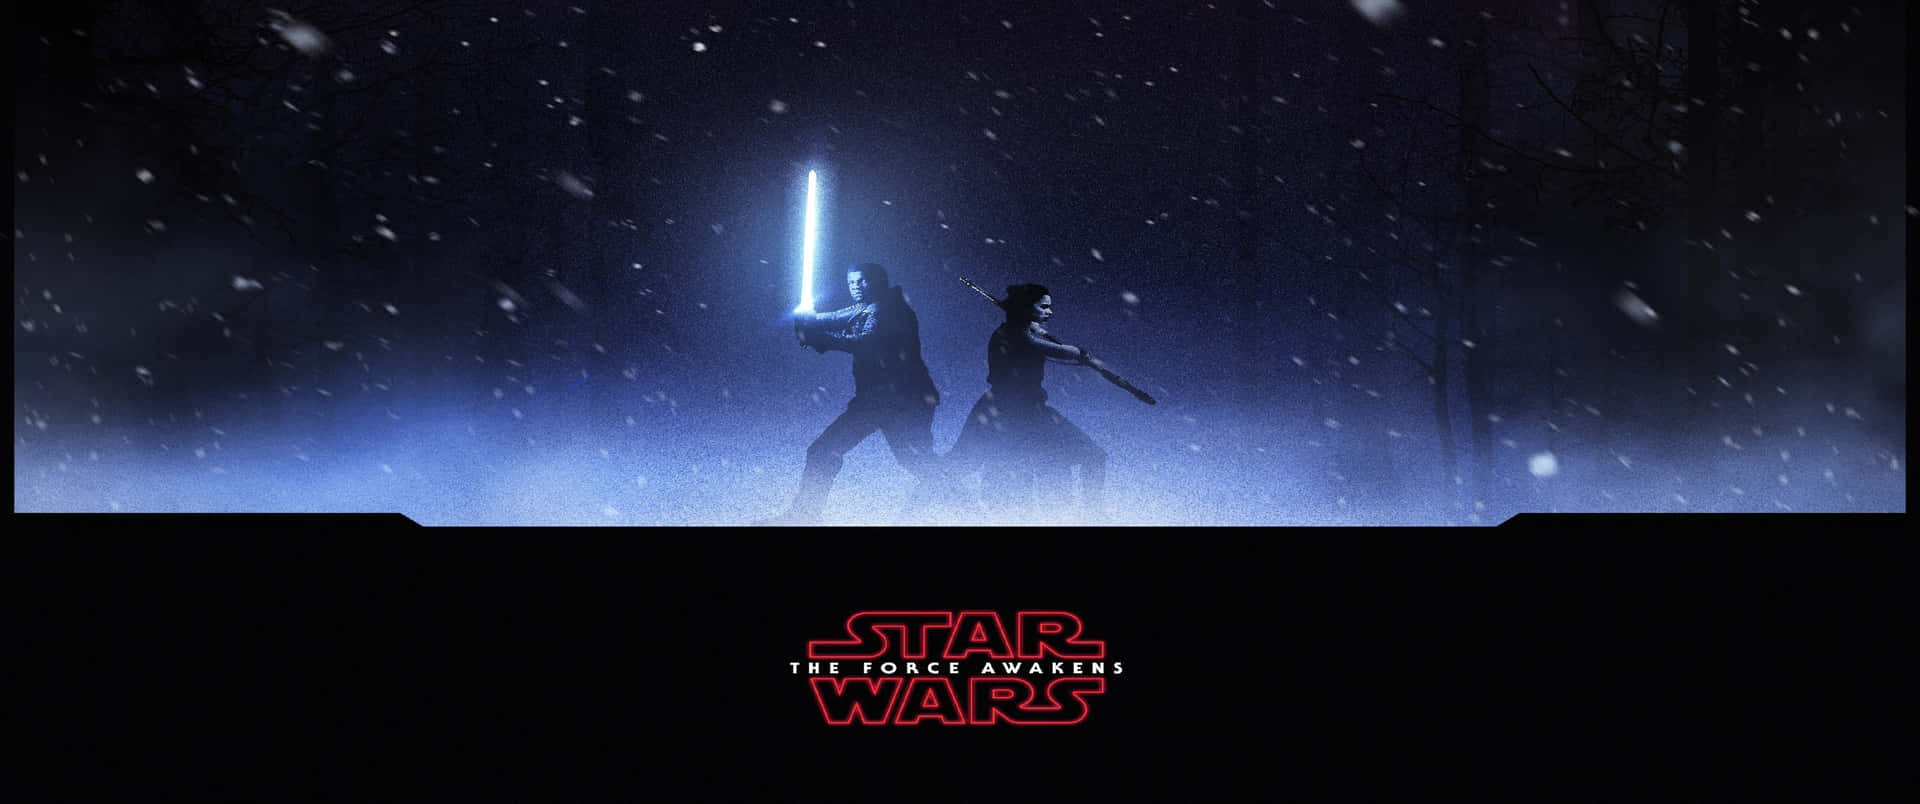 Star Wars The Force Awakens Ultra Wide Battle Scene Wallpaper